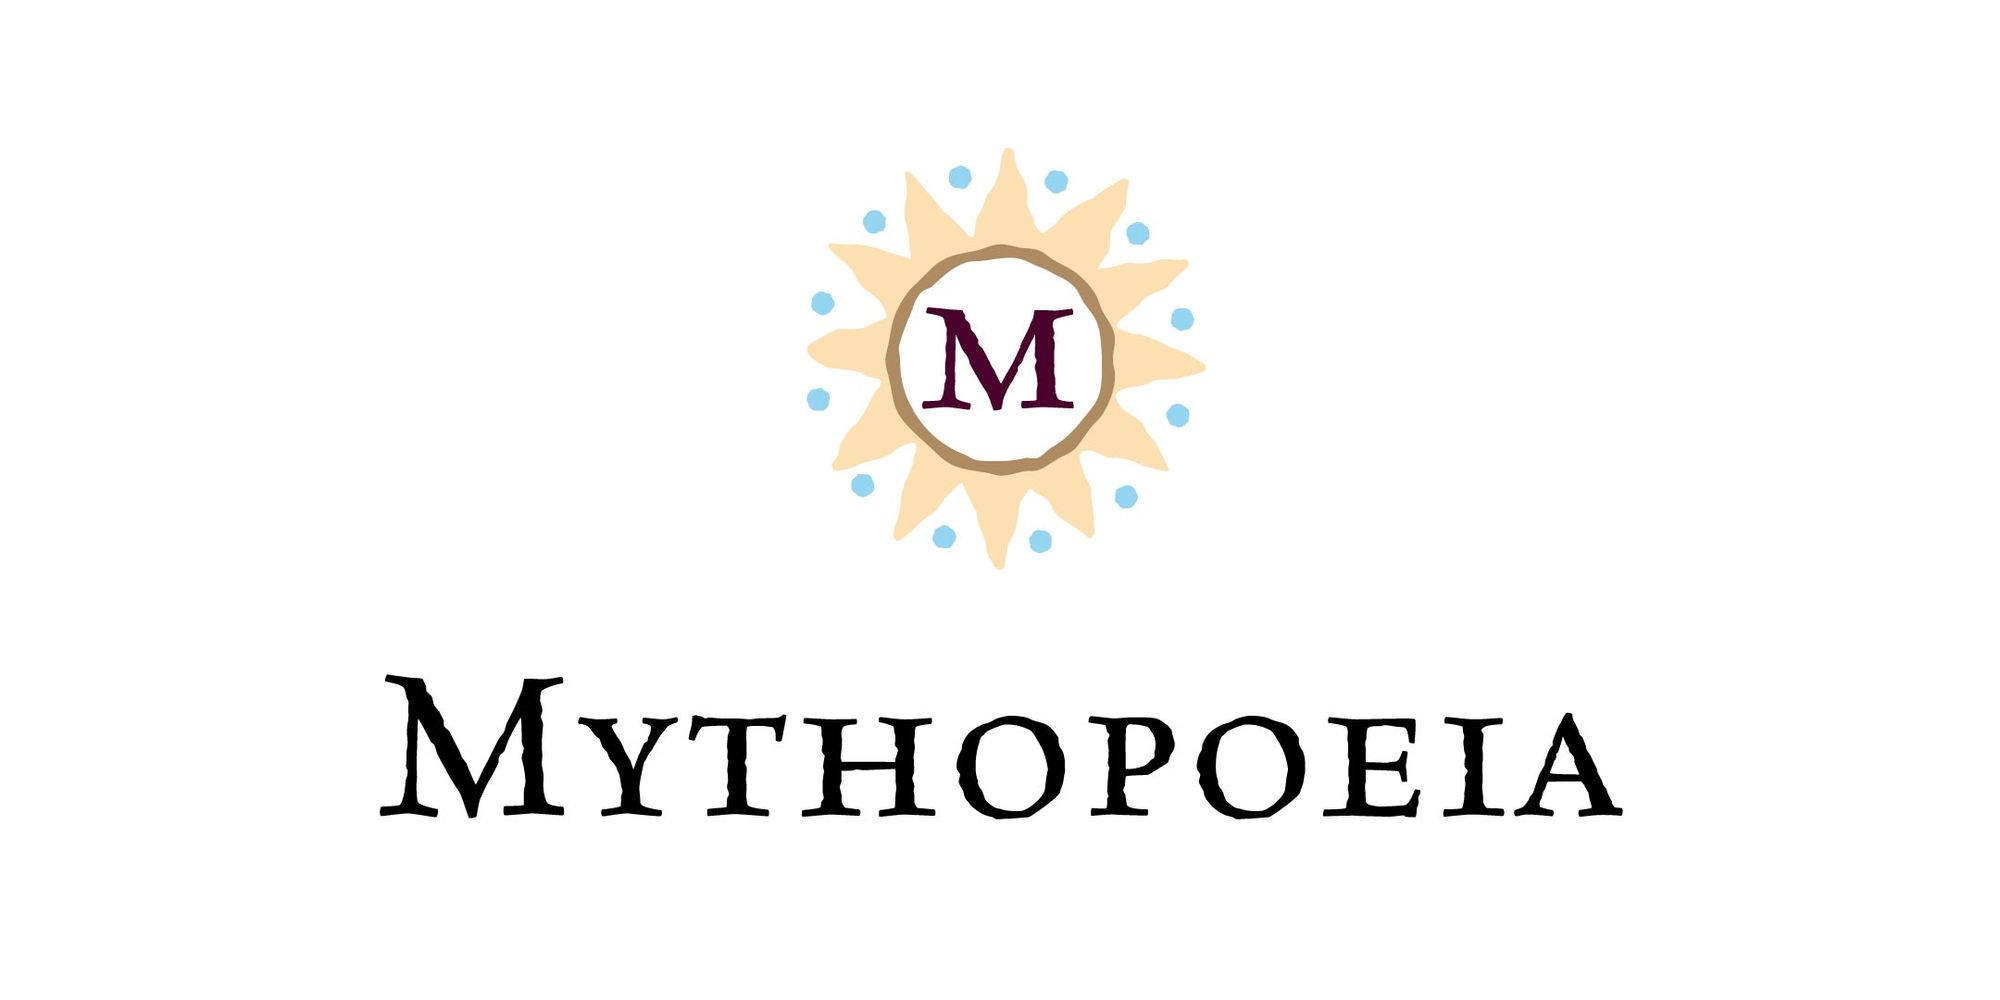 Mythopoeia